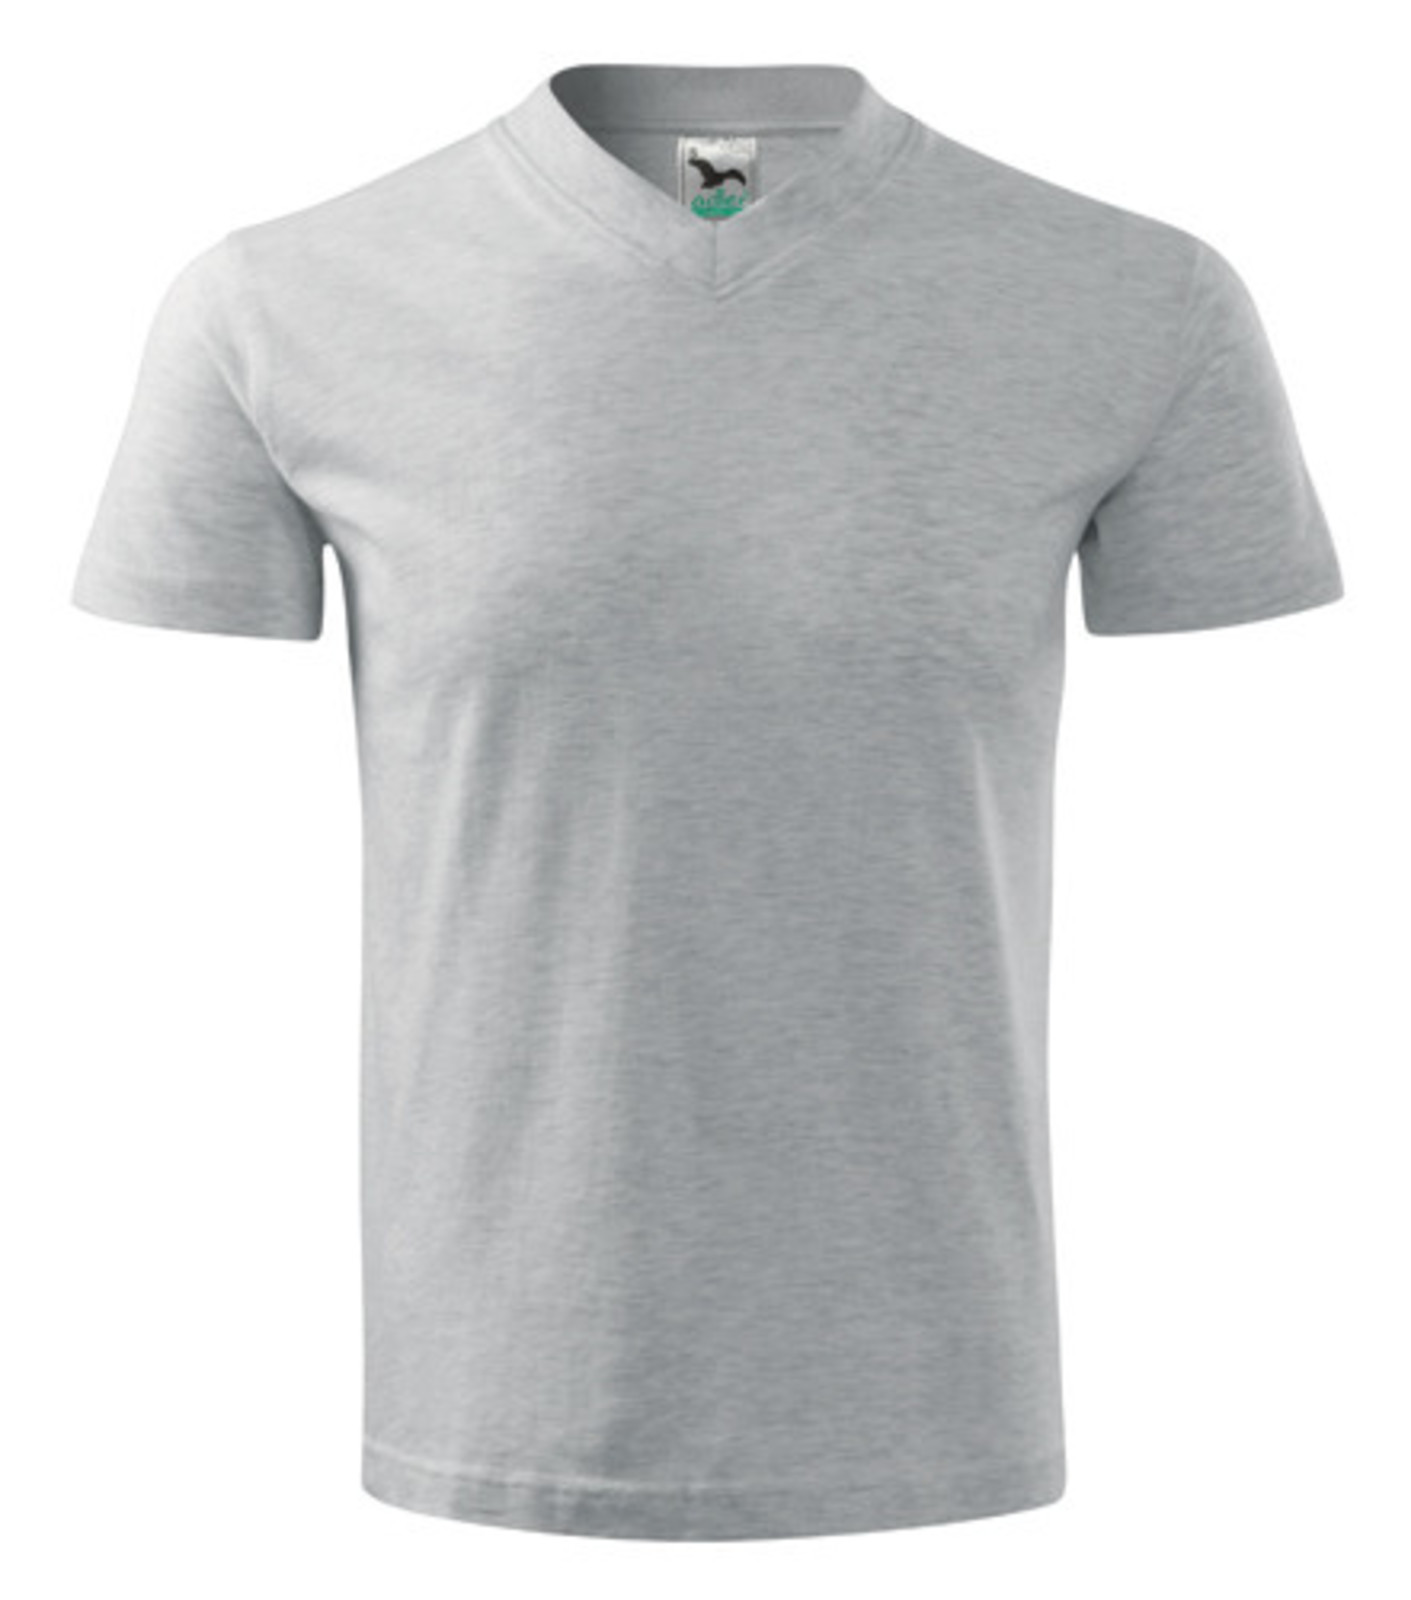 Unisex tričko s výstrihom Adler V-Neck 102 - veľkosť: XXL, farba: svetlosivý melír